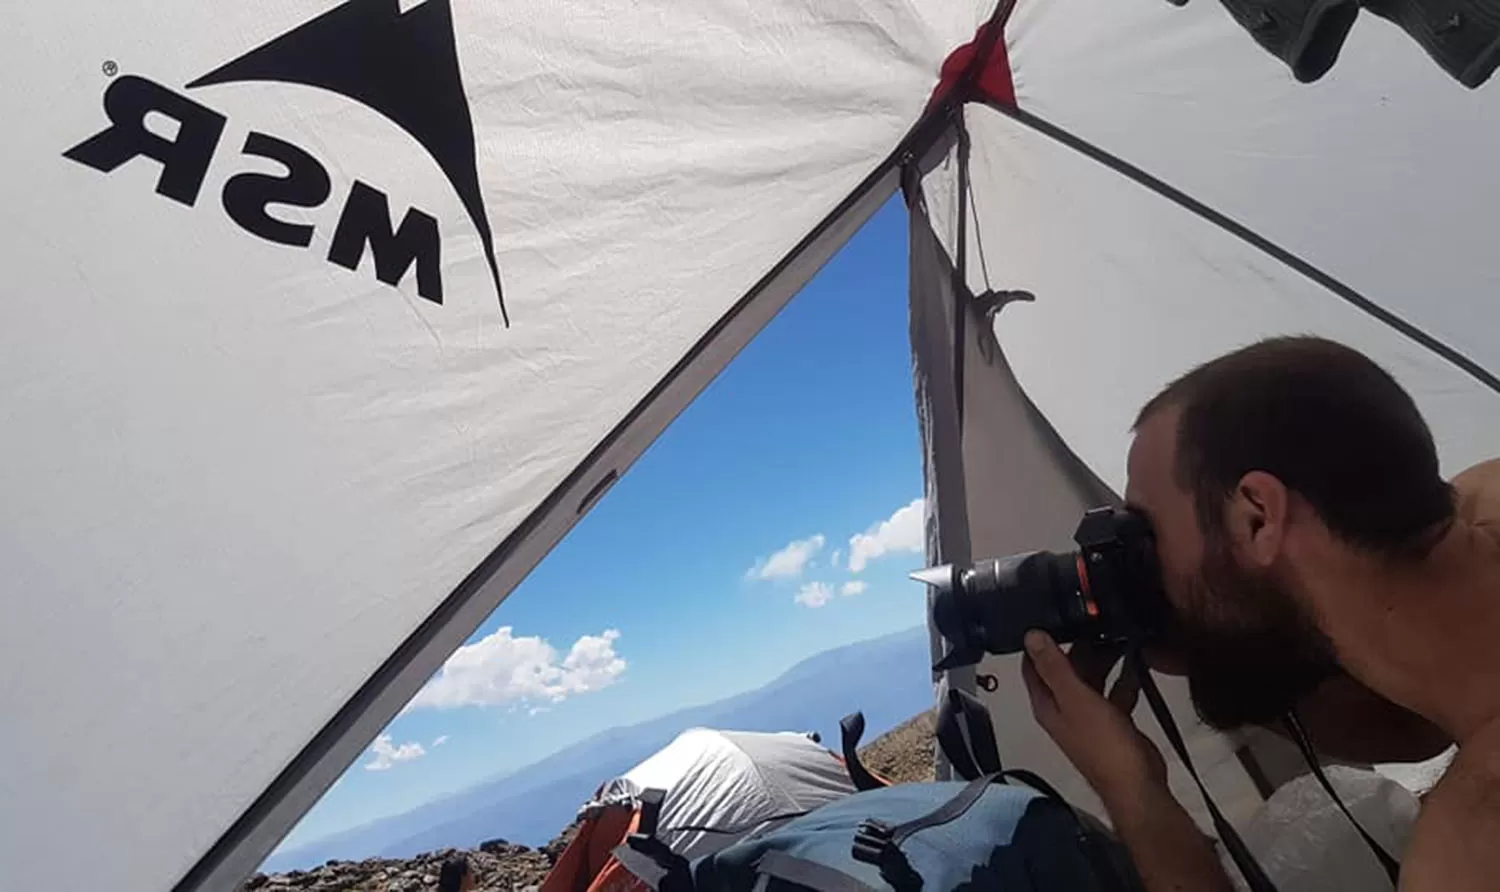 FA! Fotografía de altura: hoy disertará Andrés Suárez sobre “Una escuela de montañistas”